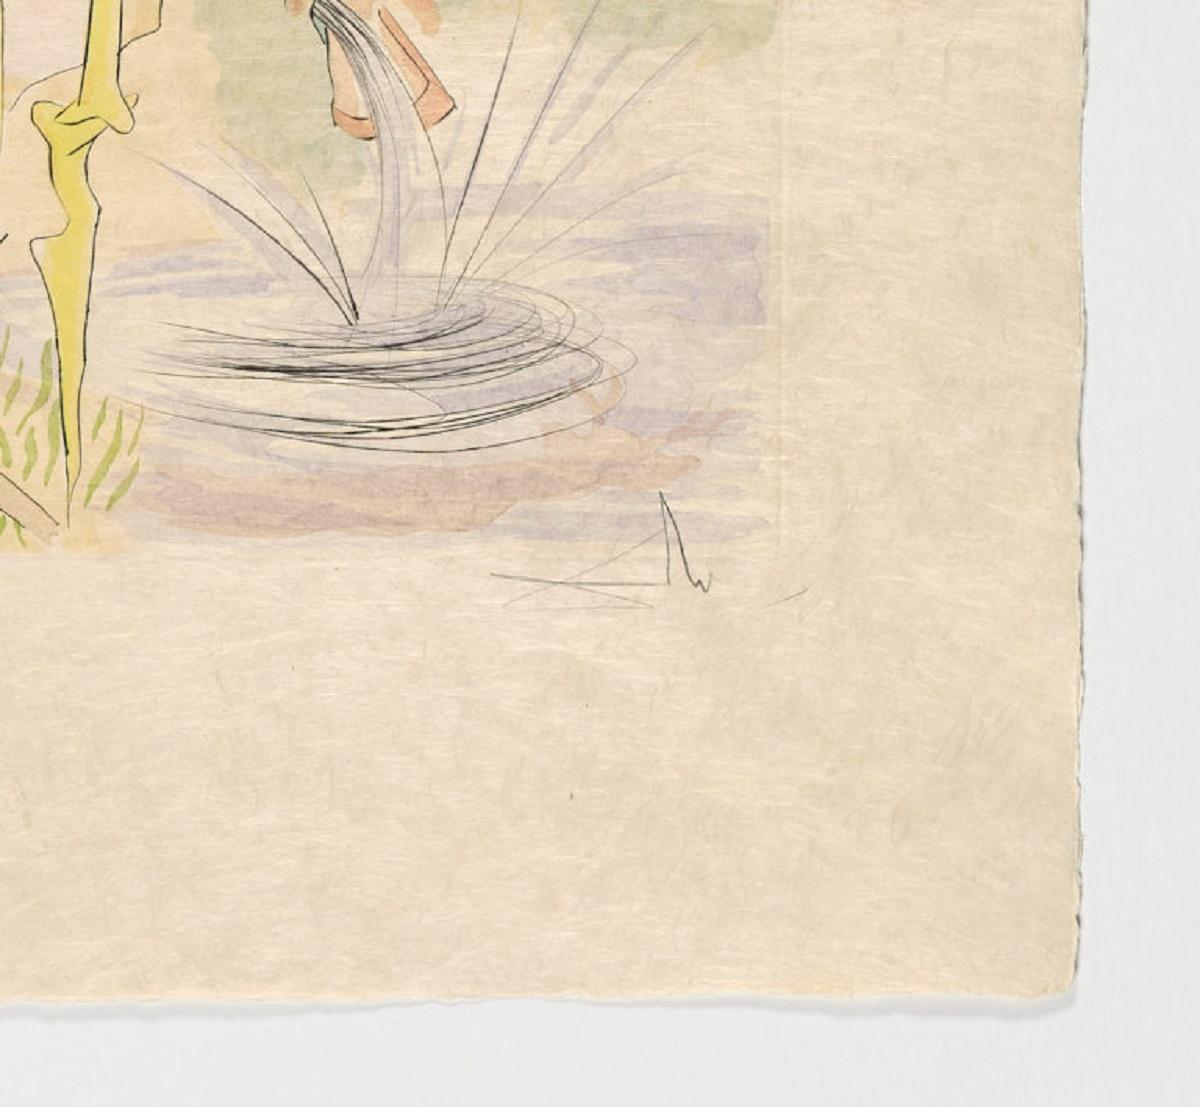 Salvador Dali (Spanien, 1904-1989)
La Cerf se voyant dans l'eau